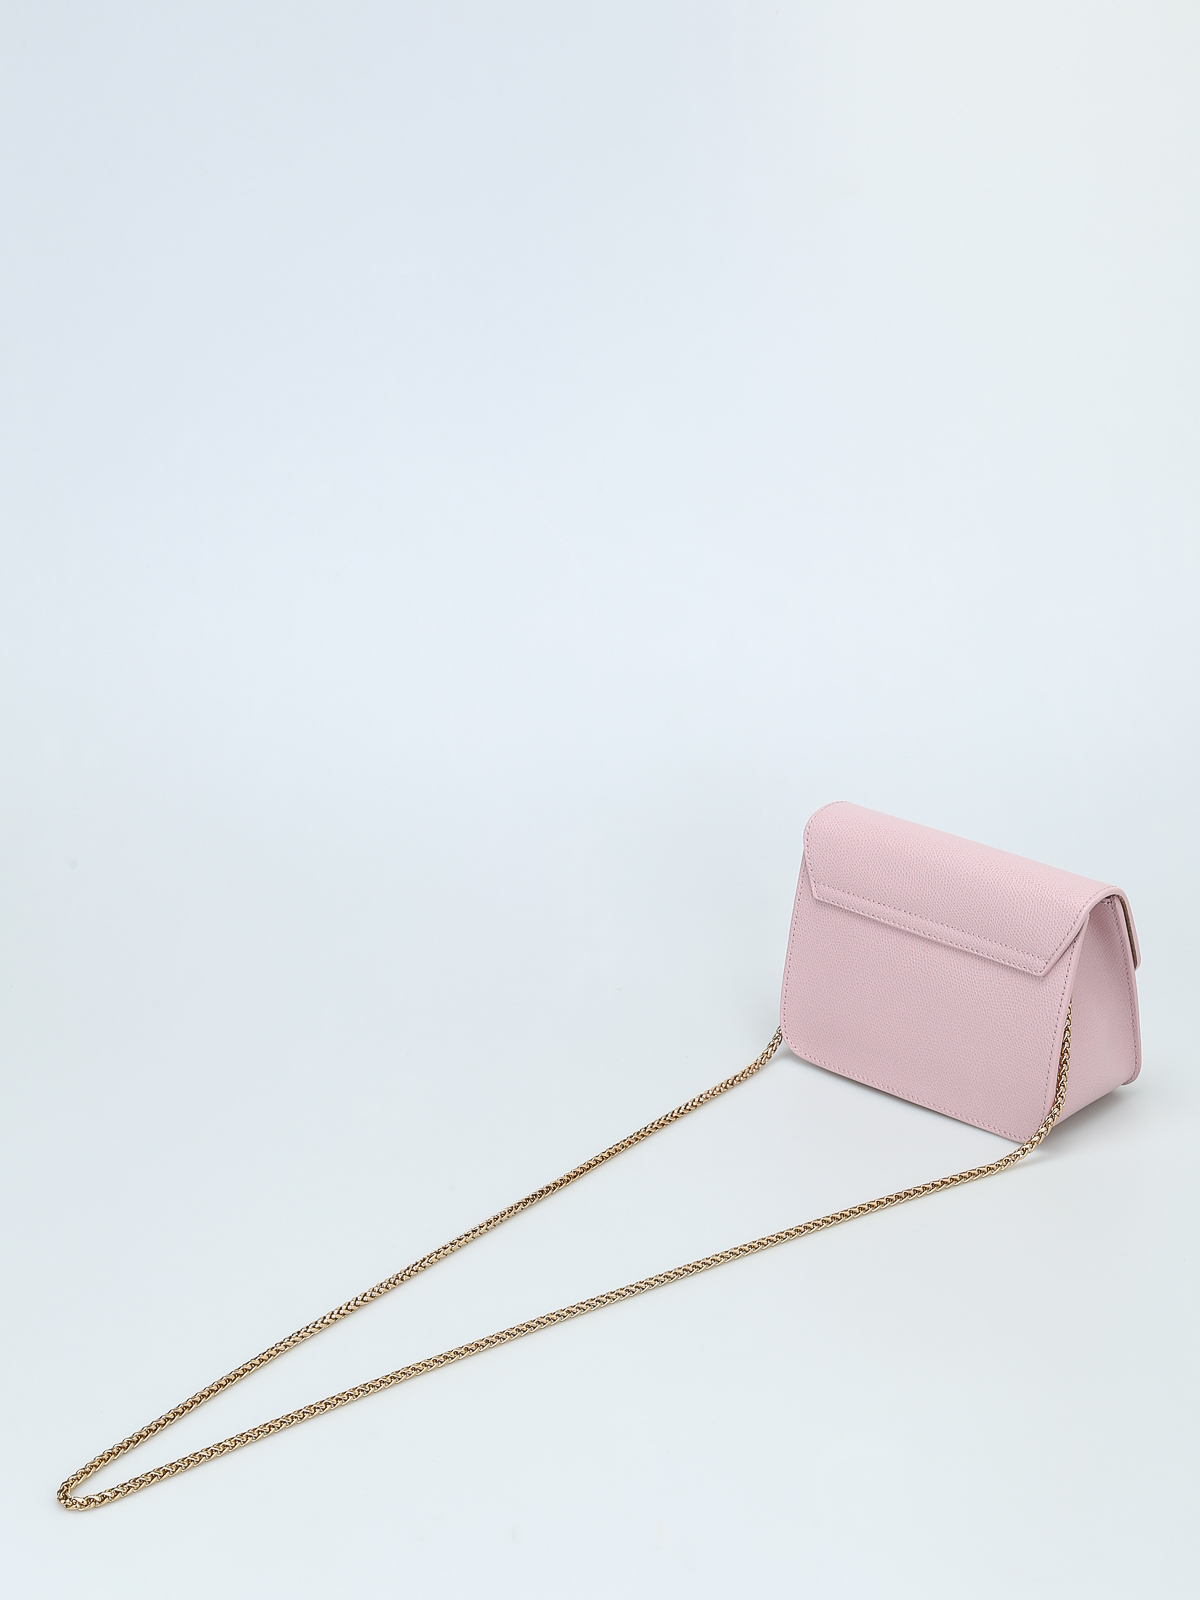 uitspraak bedrijf vertalen Cross body bags Furla - Metropolis Mini pink crossbody - 962521